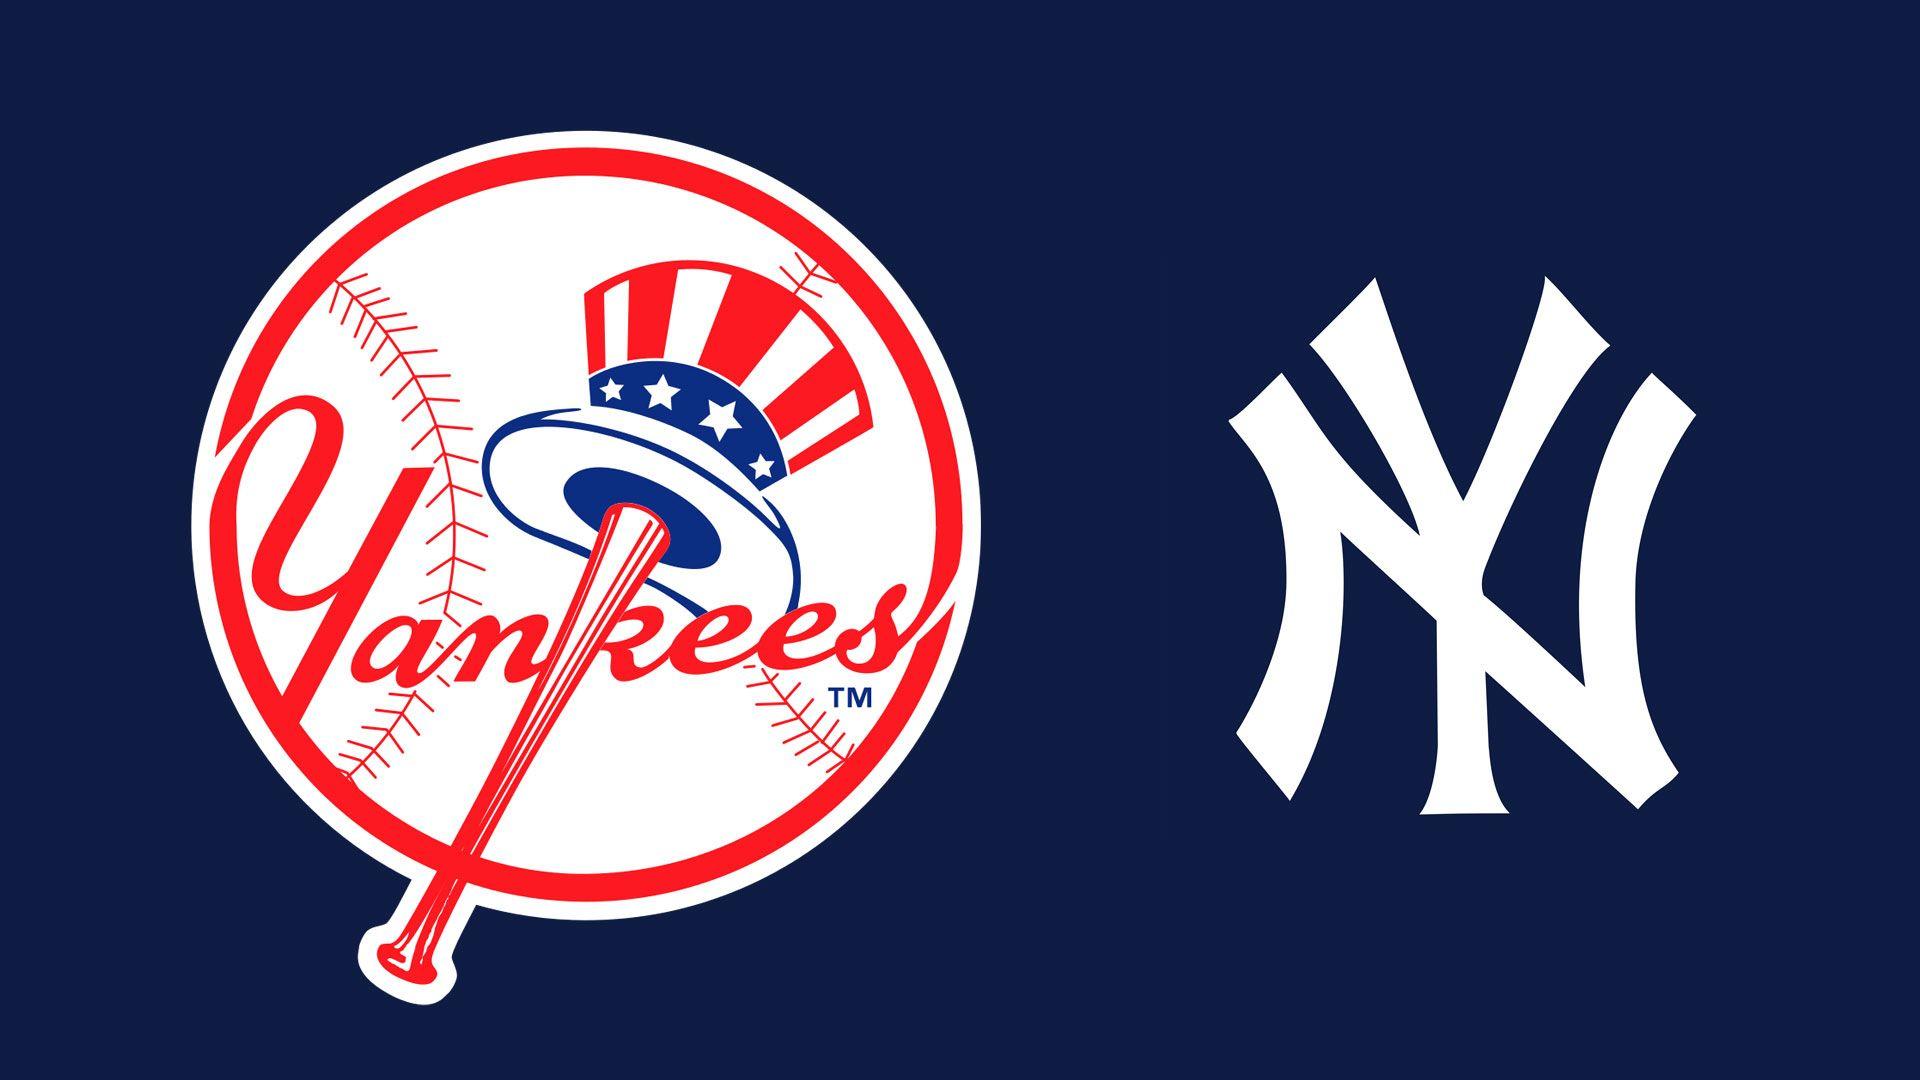 MLB New York Yankees Logo wallpaper 2018 in Baseball